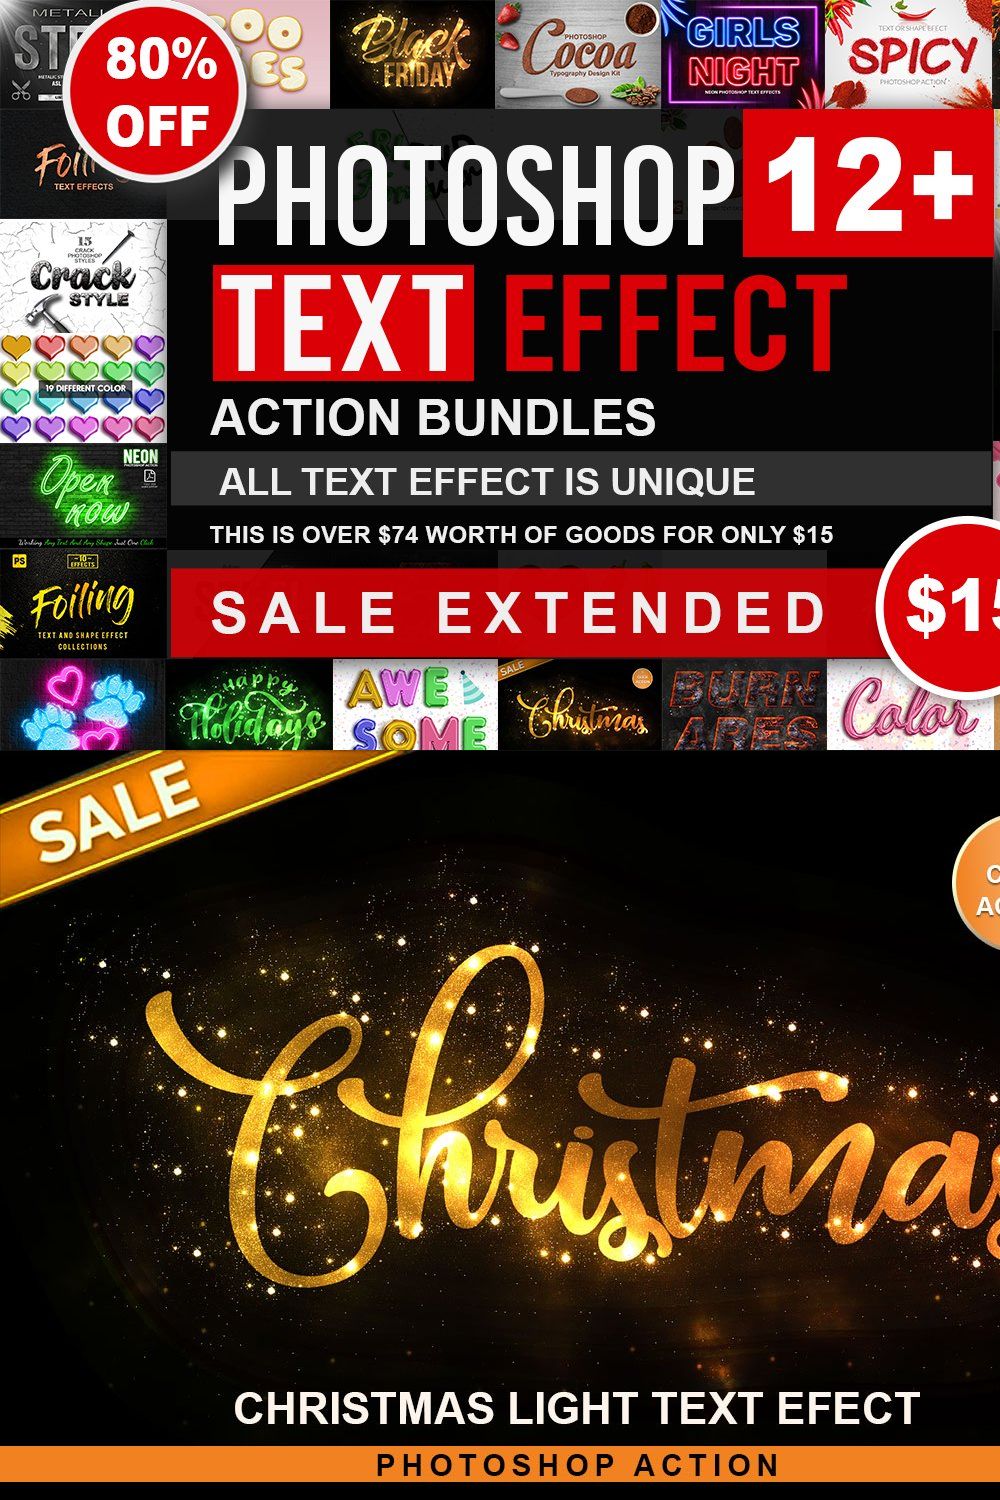 Text Effect Photoshop Action Bundle pinterest preview image.